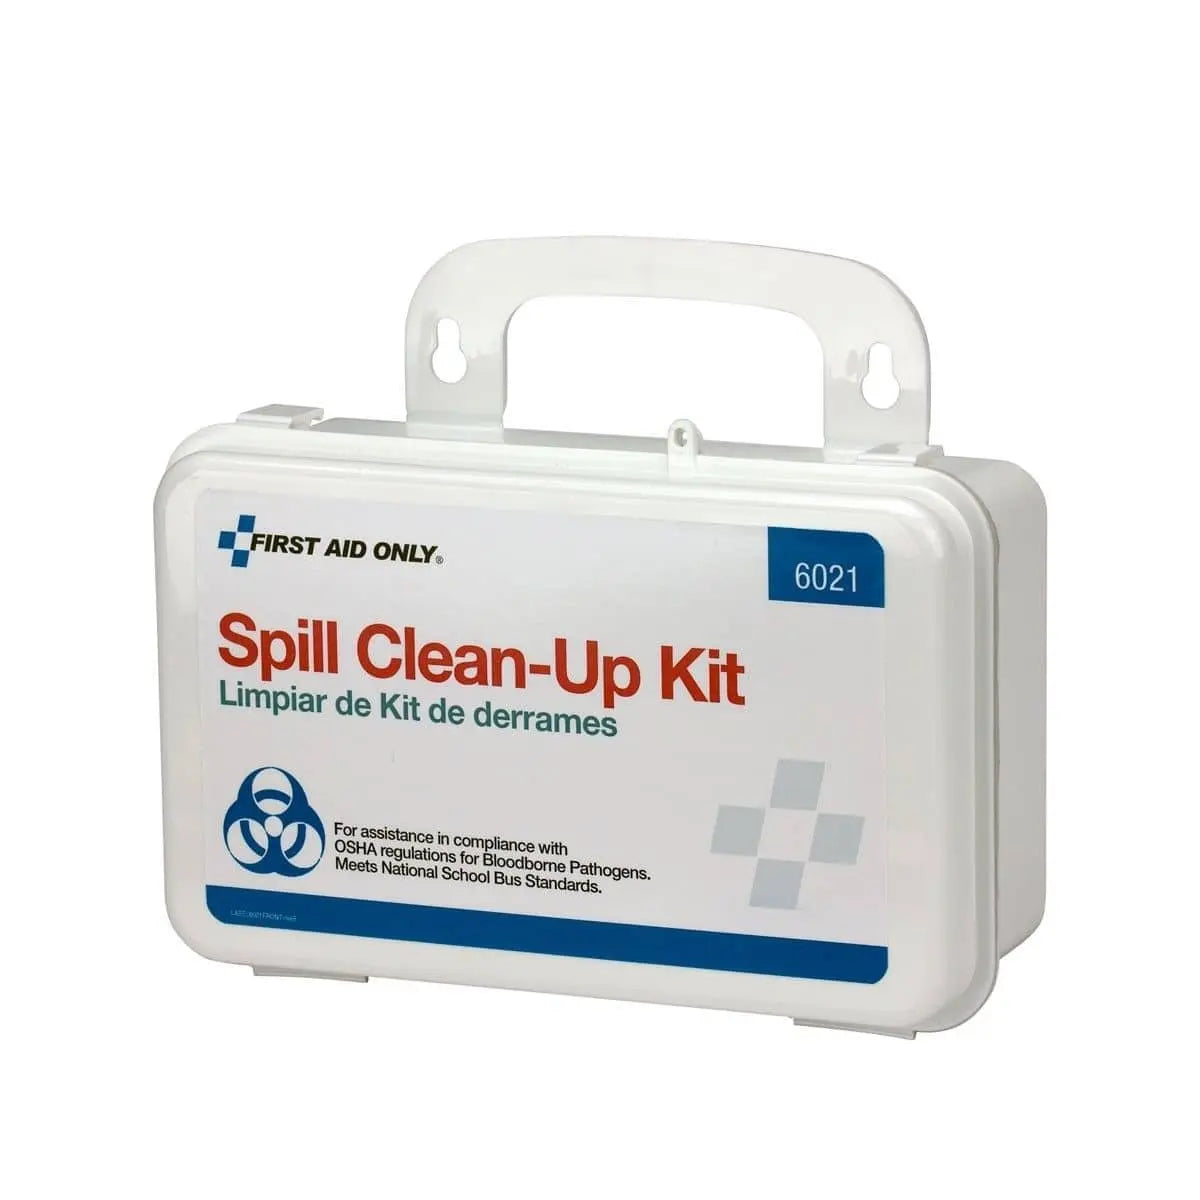 20 Piece Blood Borne Pathogen Spill Clean-Up Kit In Weatherproof Plastic Case